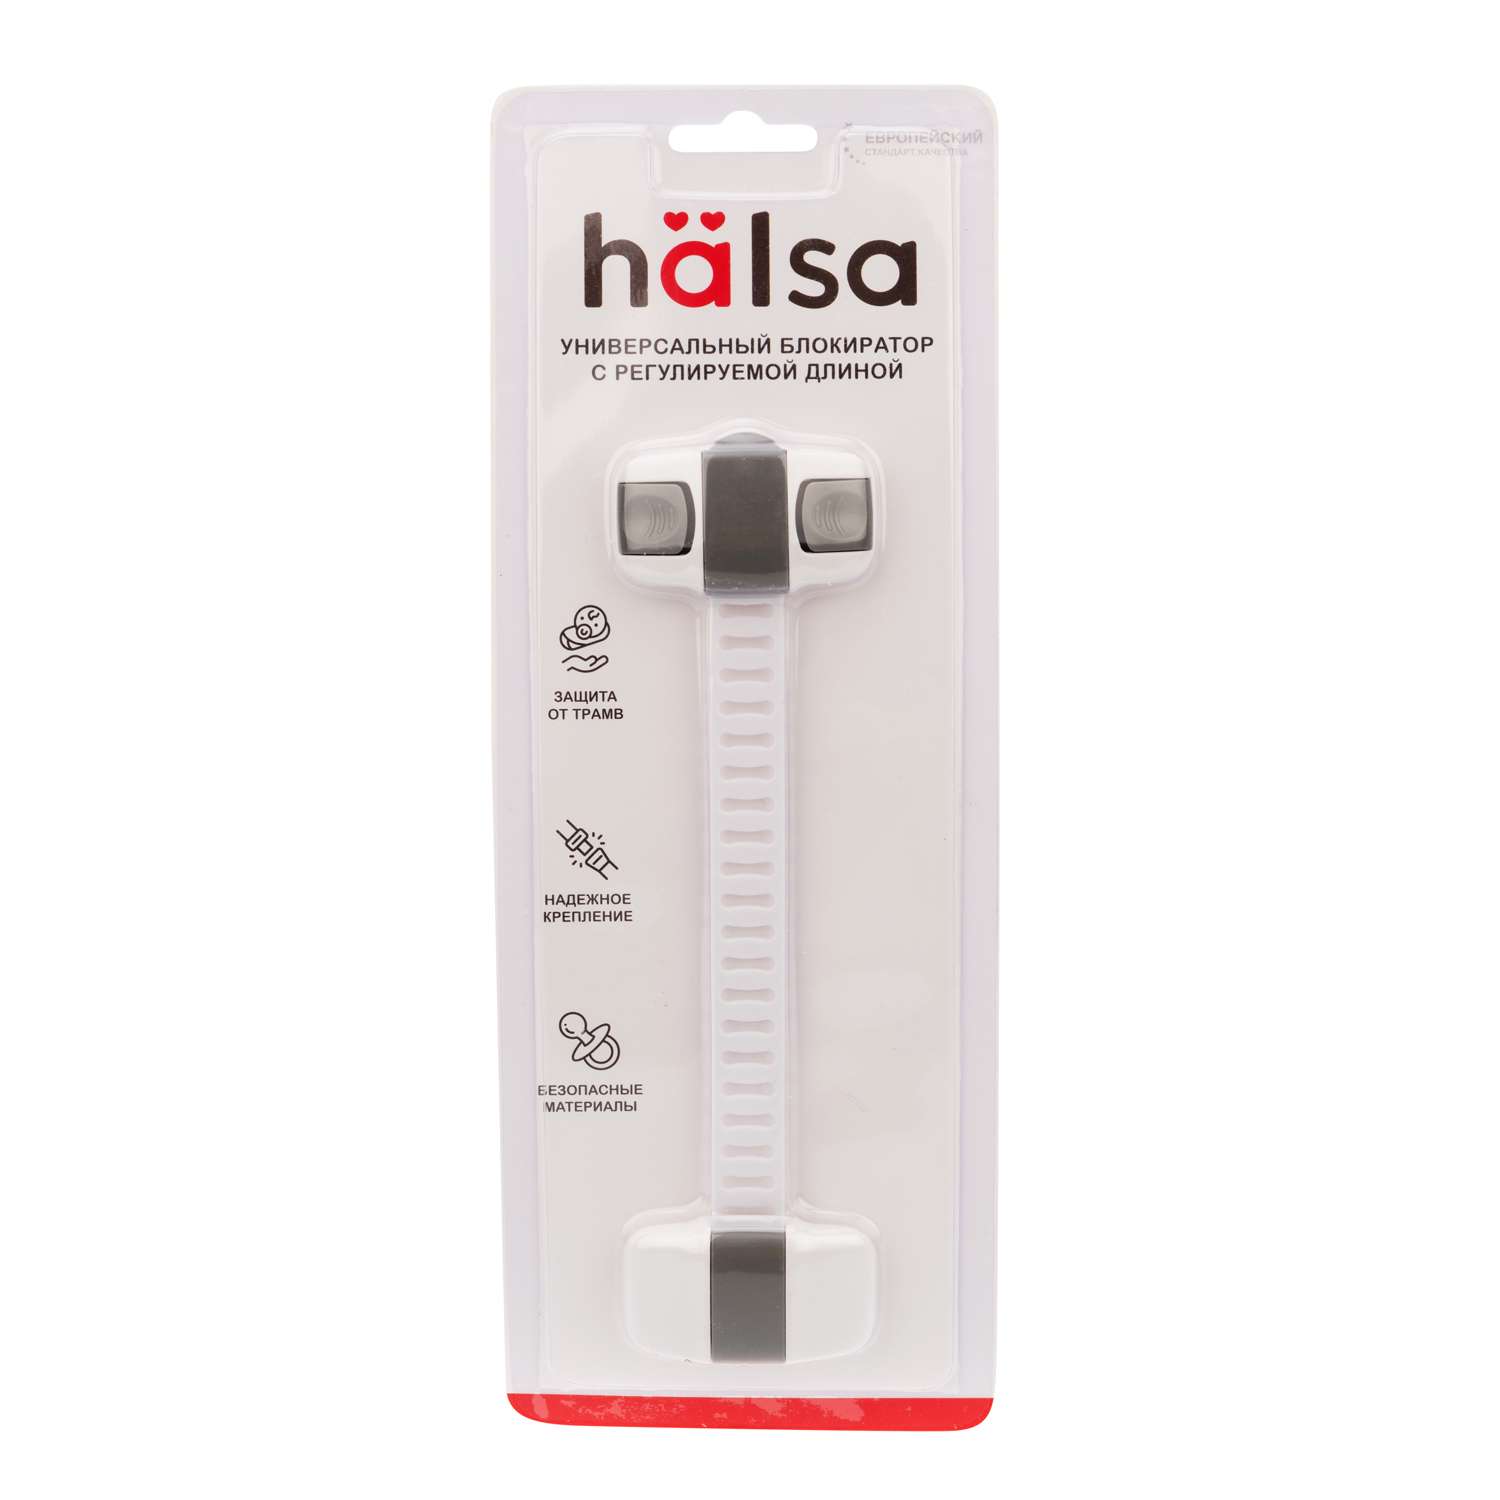 Блокиратор HALSA с регулируемой длиной для ограничения доступа к шкафам - фото 8